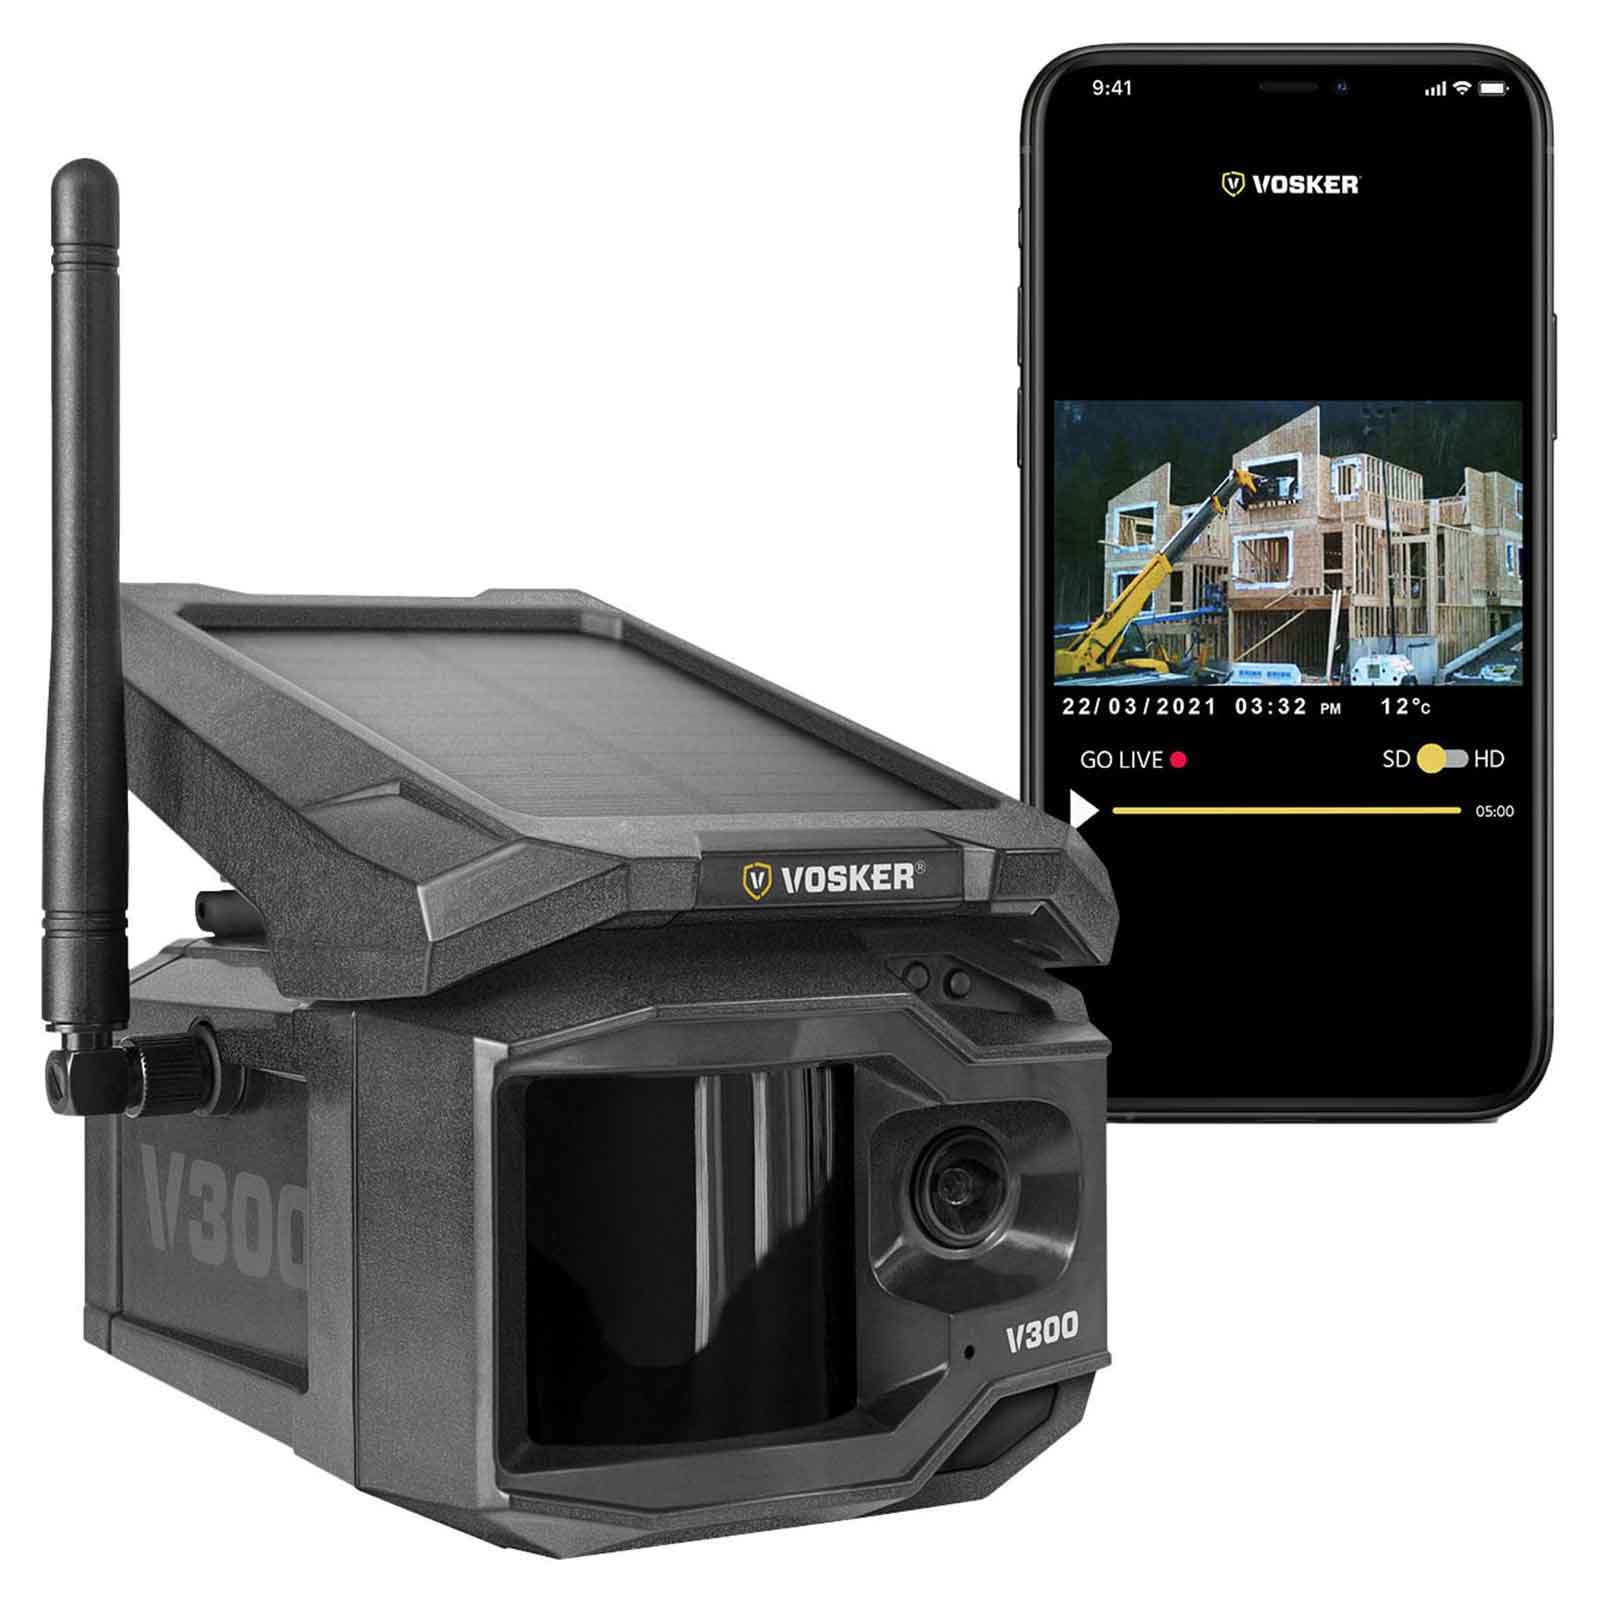 Caméra de surveillance Vosker V300 + Powerbank solaire + Base annuelle